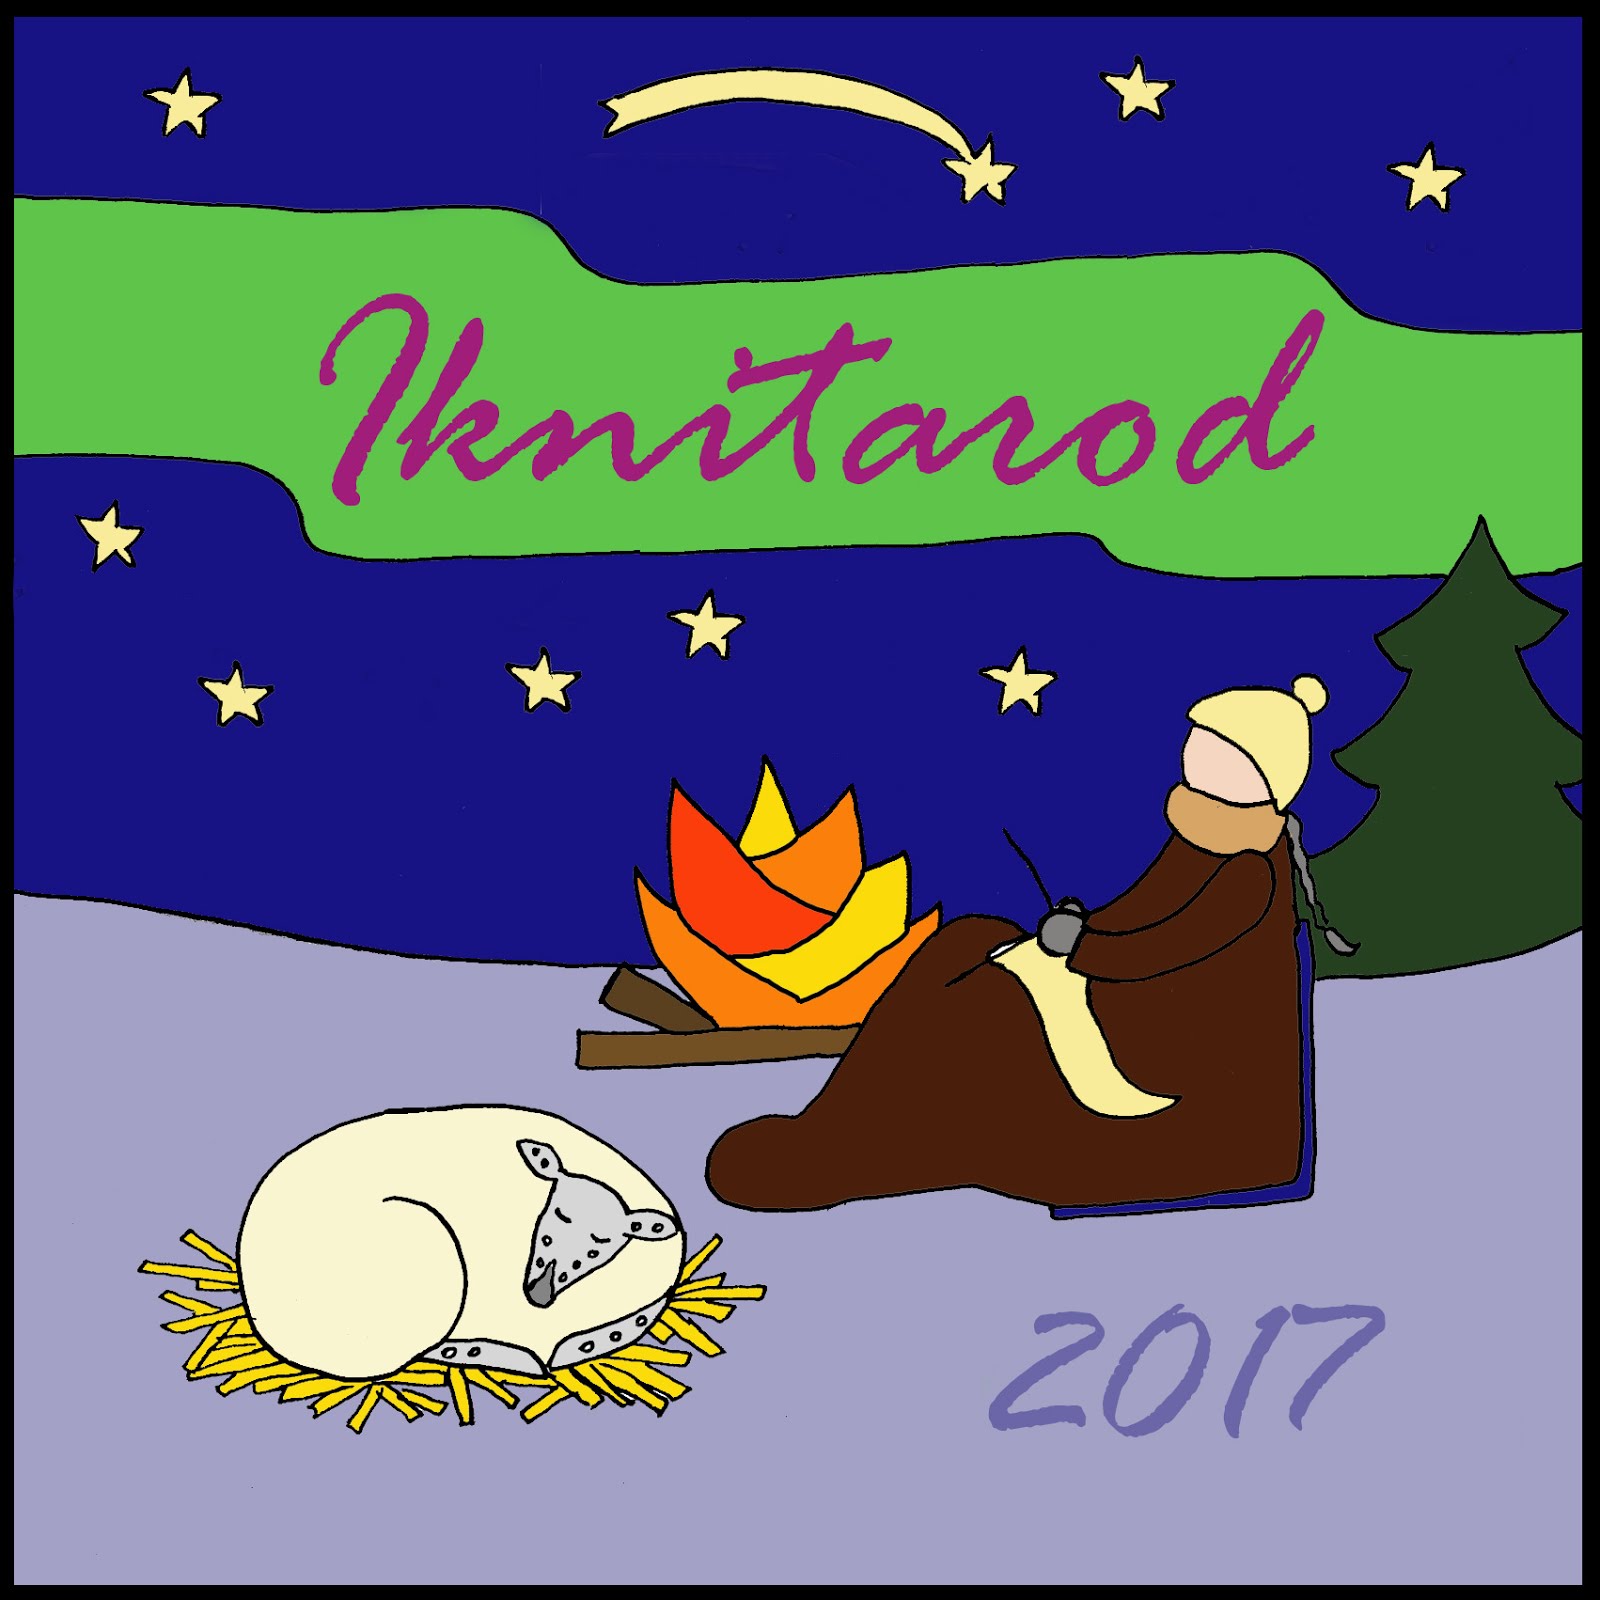 2017 Iknitarod